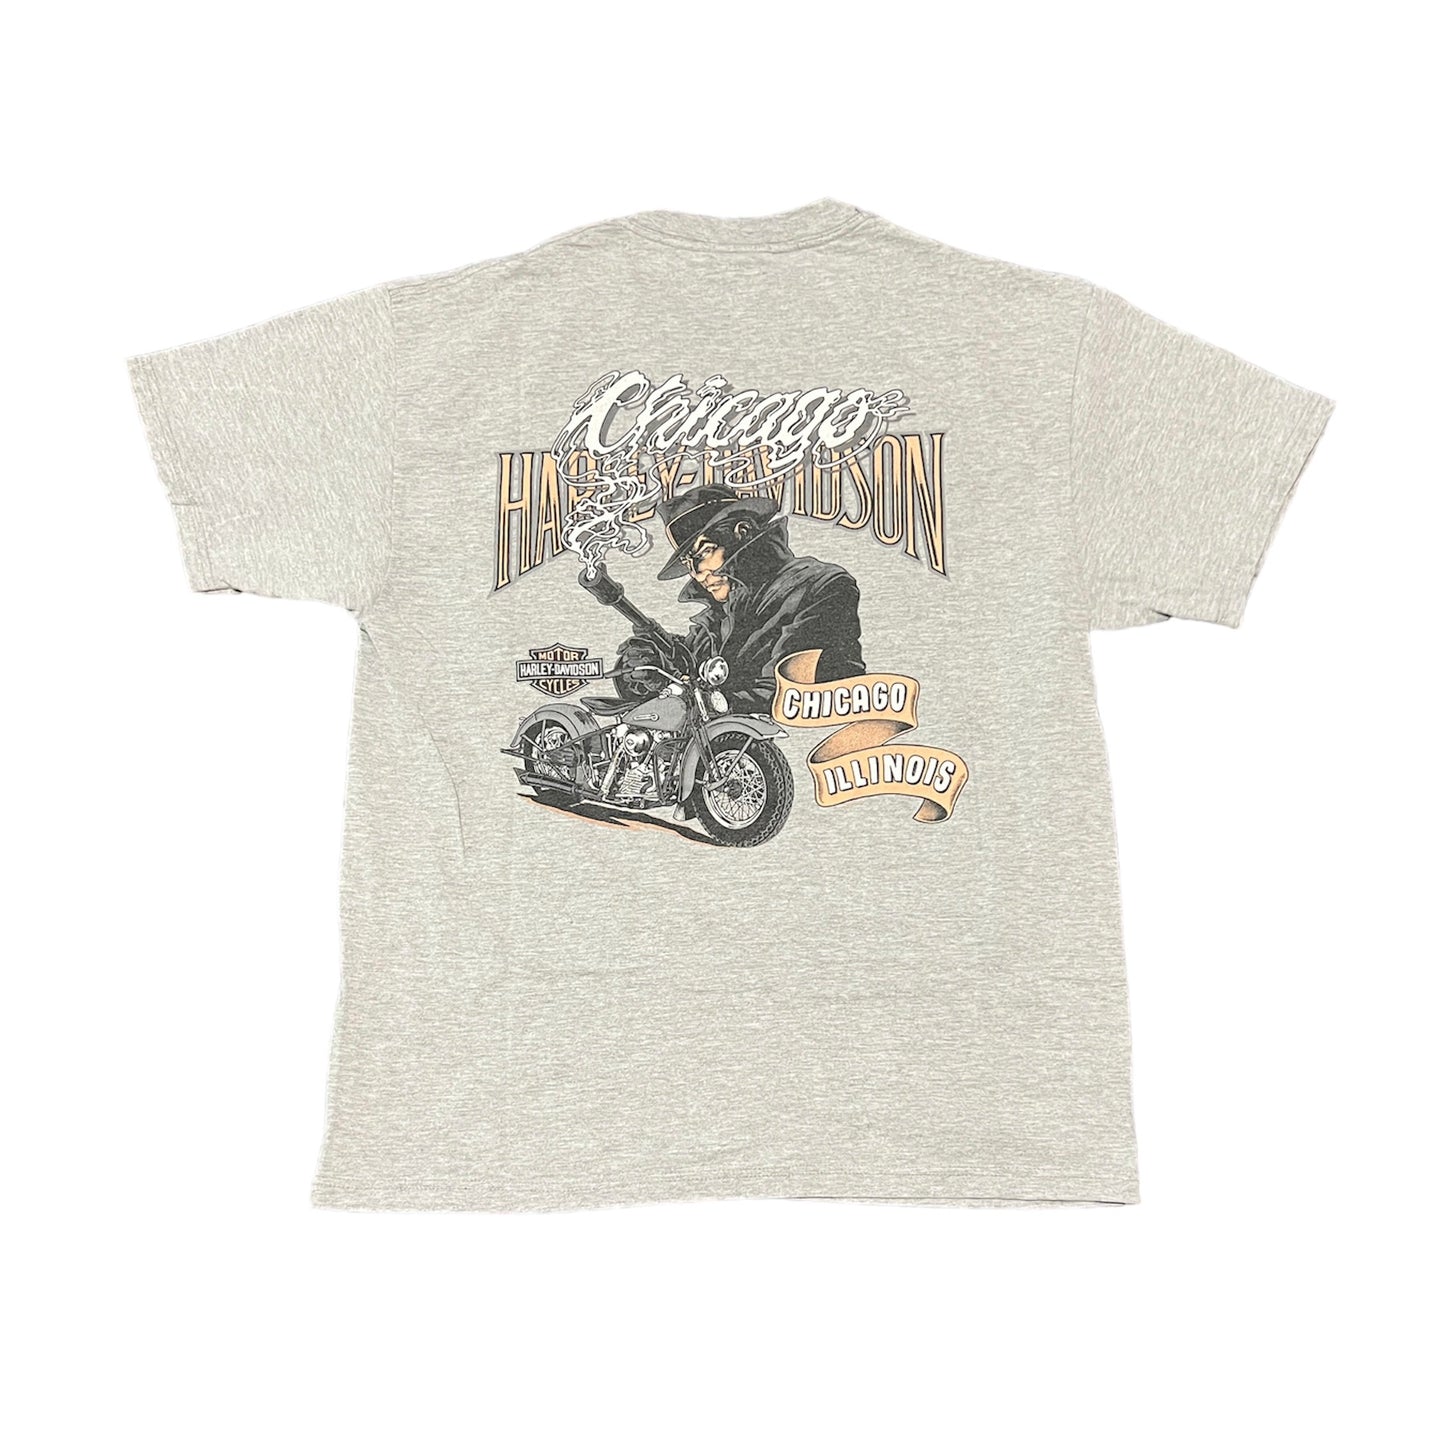 Harley Davidson Chicago Illinois T-Shirt Size Large